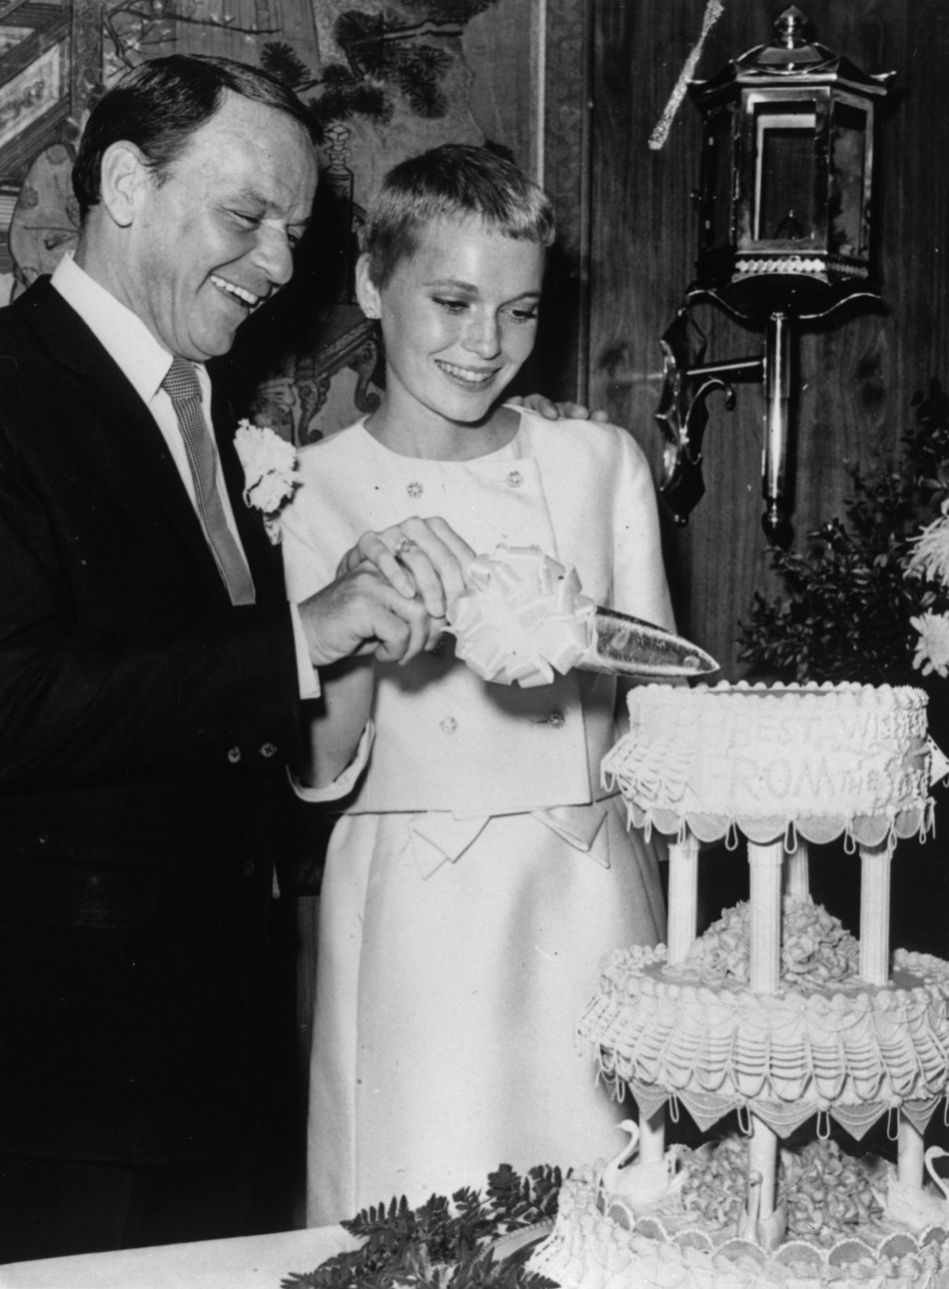 Στις 19 Ιουλίου του 1966 παντρεύτηκε τη Μία Φάροου στο Λας Βέγκας (Keystone/Getty Images/Ideal Image)